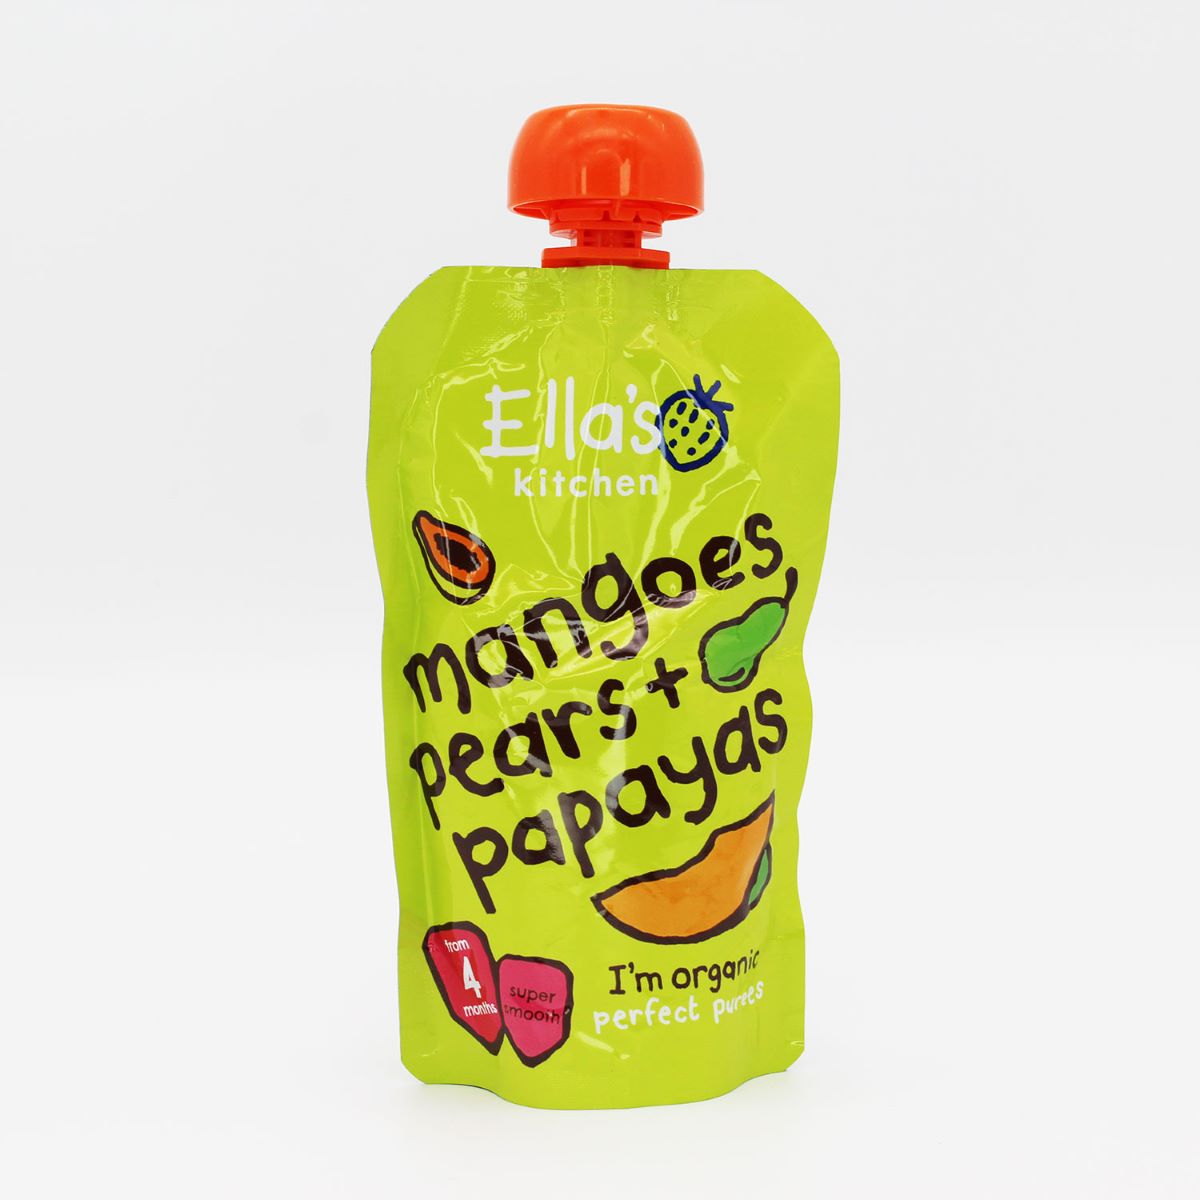 Ella's Kitchen Mangoes Pears & Papayas 120g